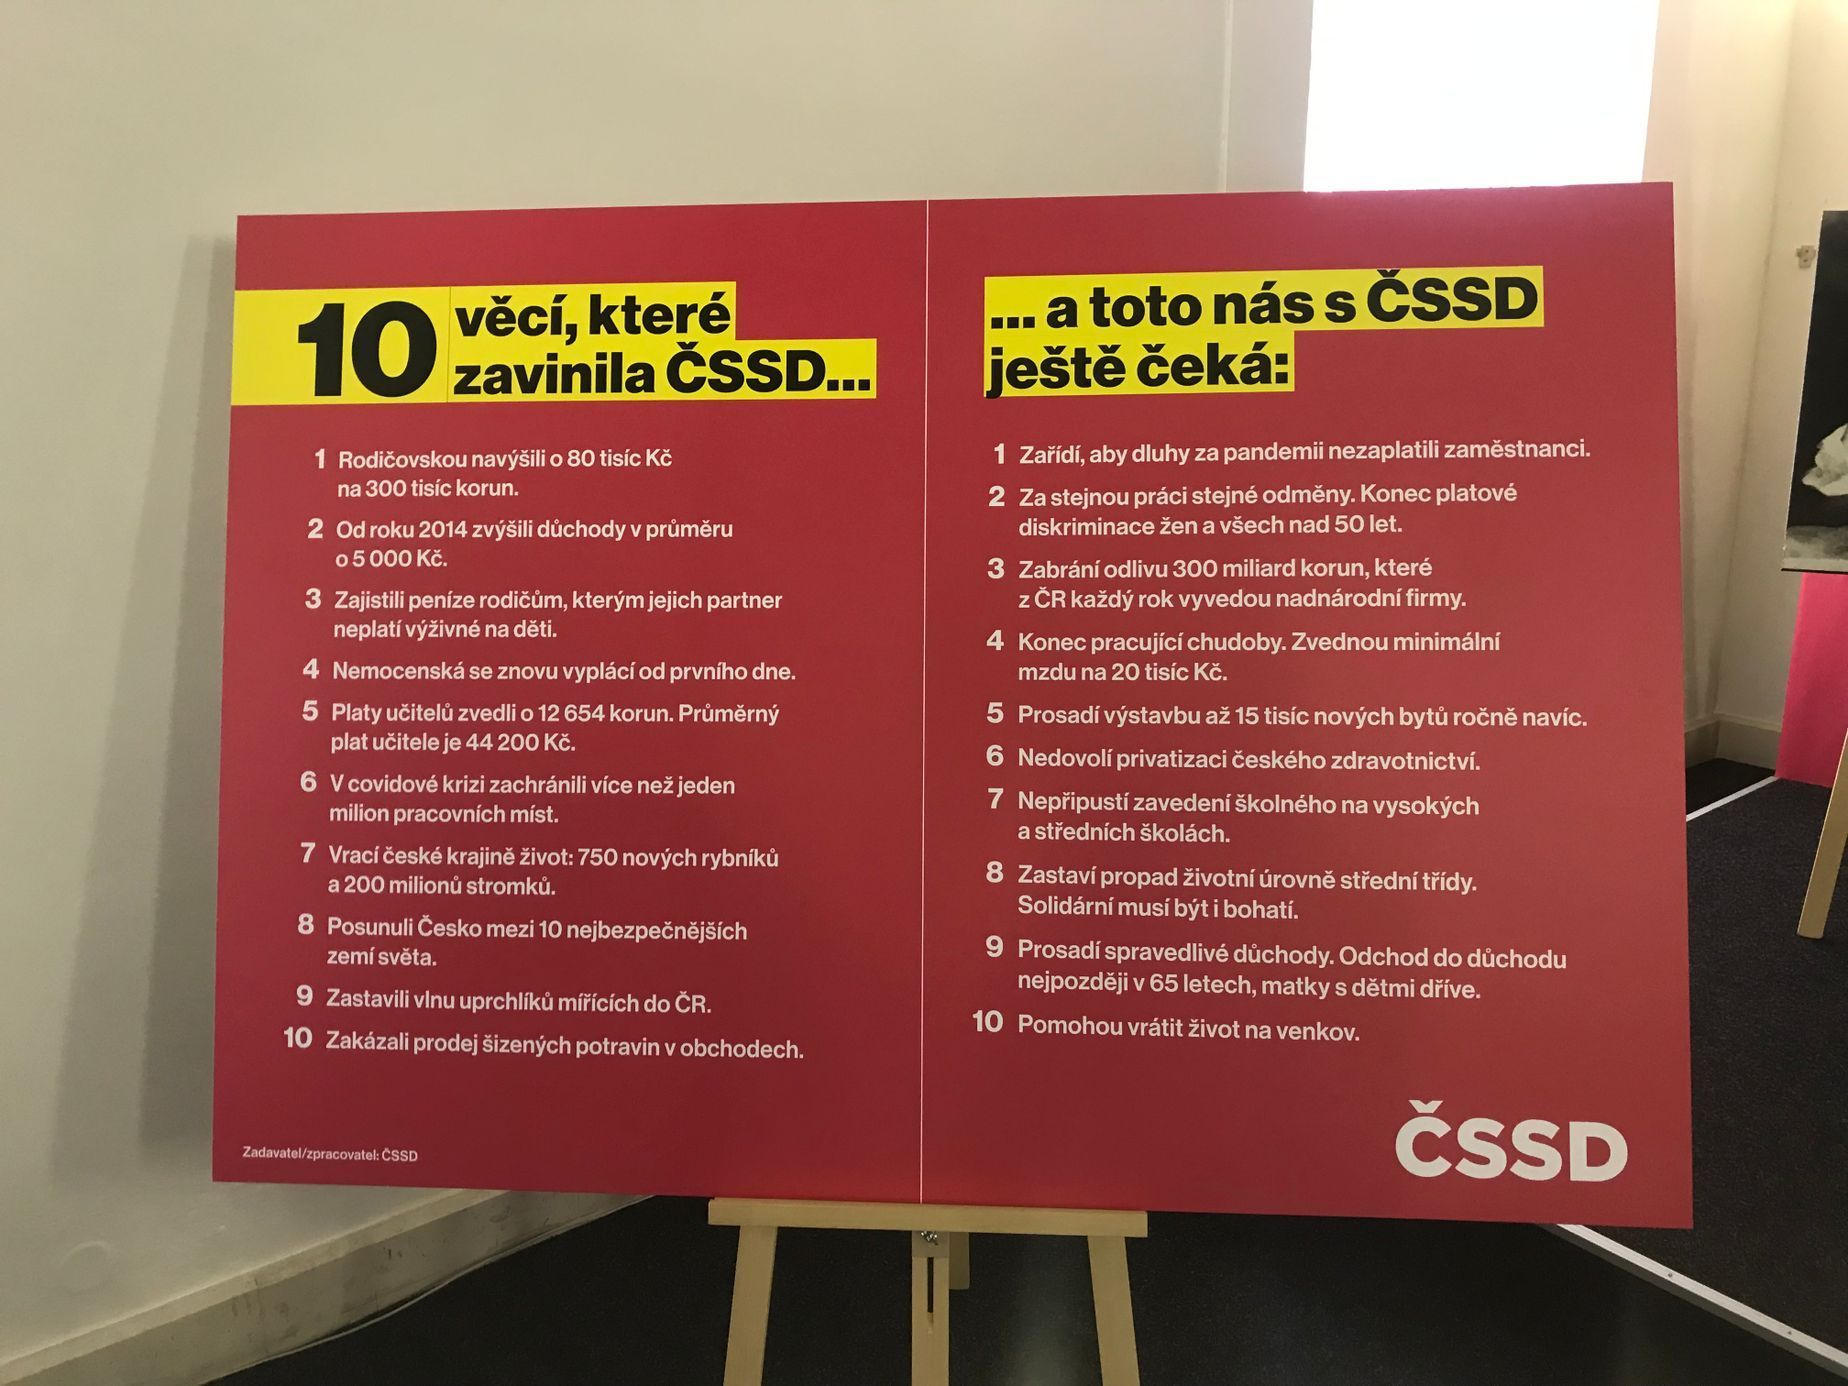 Při oznamování lídrů kandidátky ukázala ČSSD také tabuli s tématy, která "zavinila" a která chce splnil v dalším volebním období.